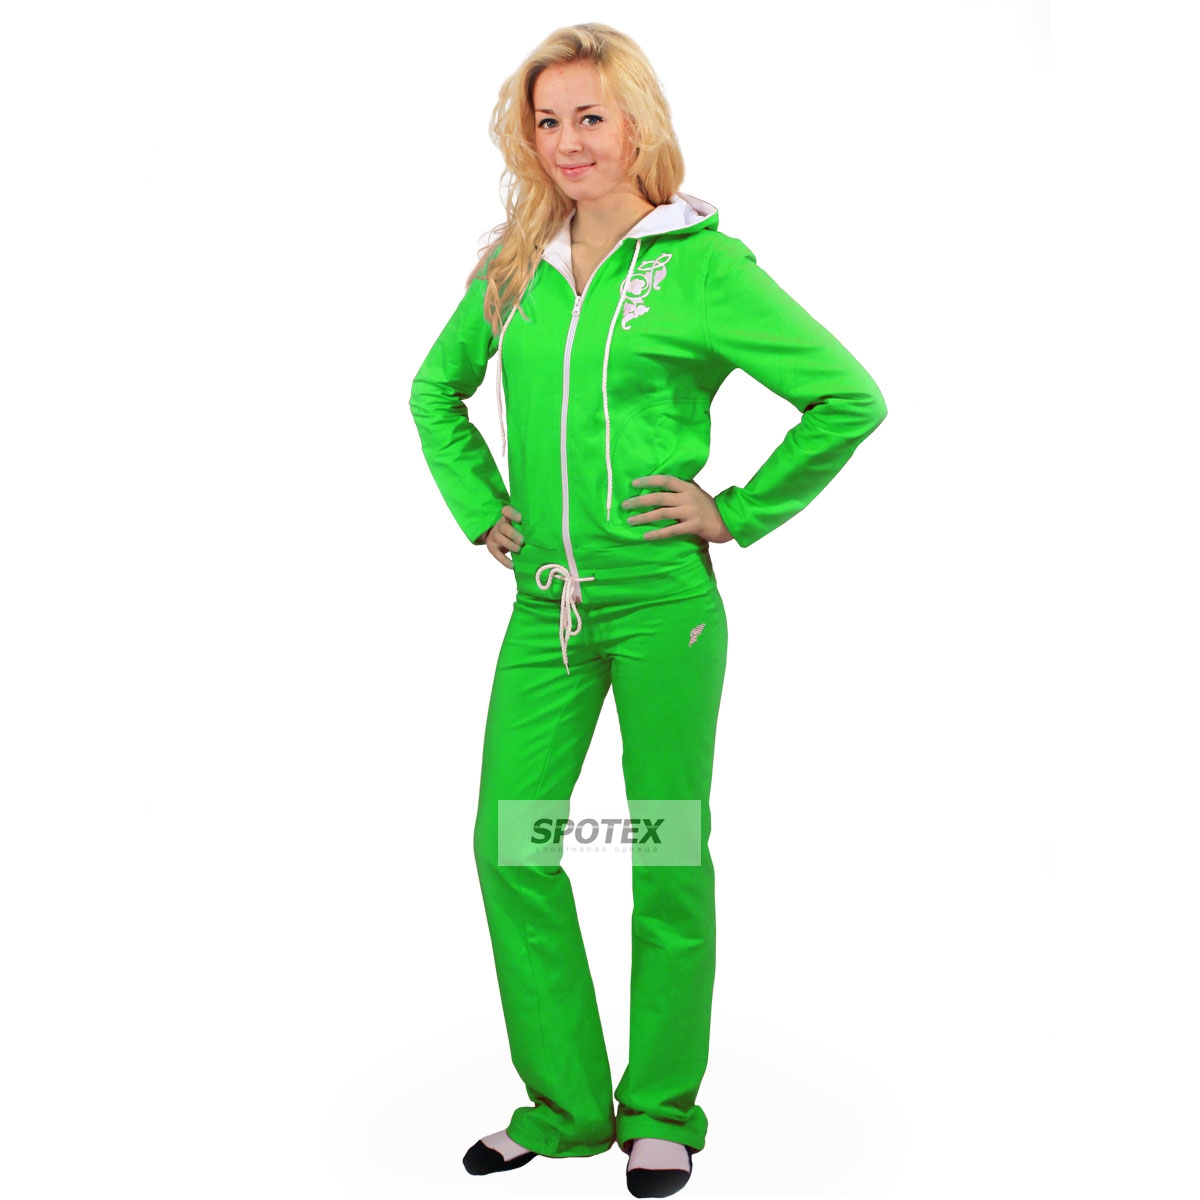 Вб костюм женский. Спортивный костюм адидас женский зеленый. Костюм адидас салатовый женский. Костюм адидас женский светло зелёный. Женщина в спортивном костюме.